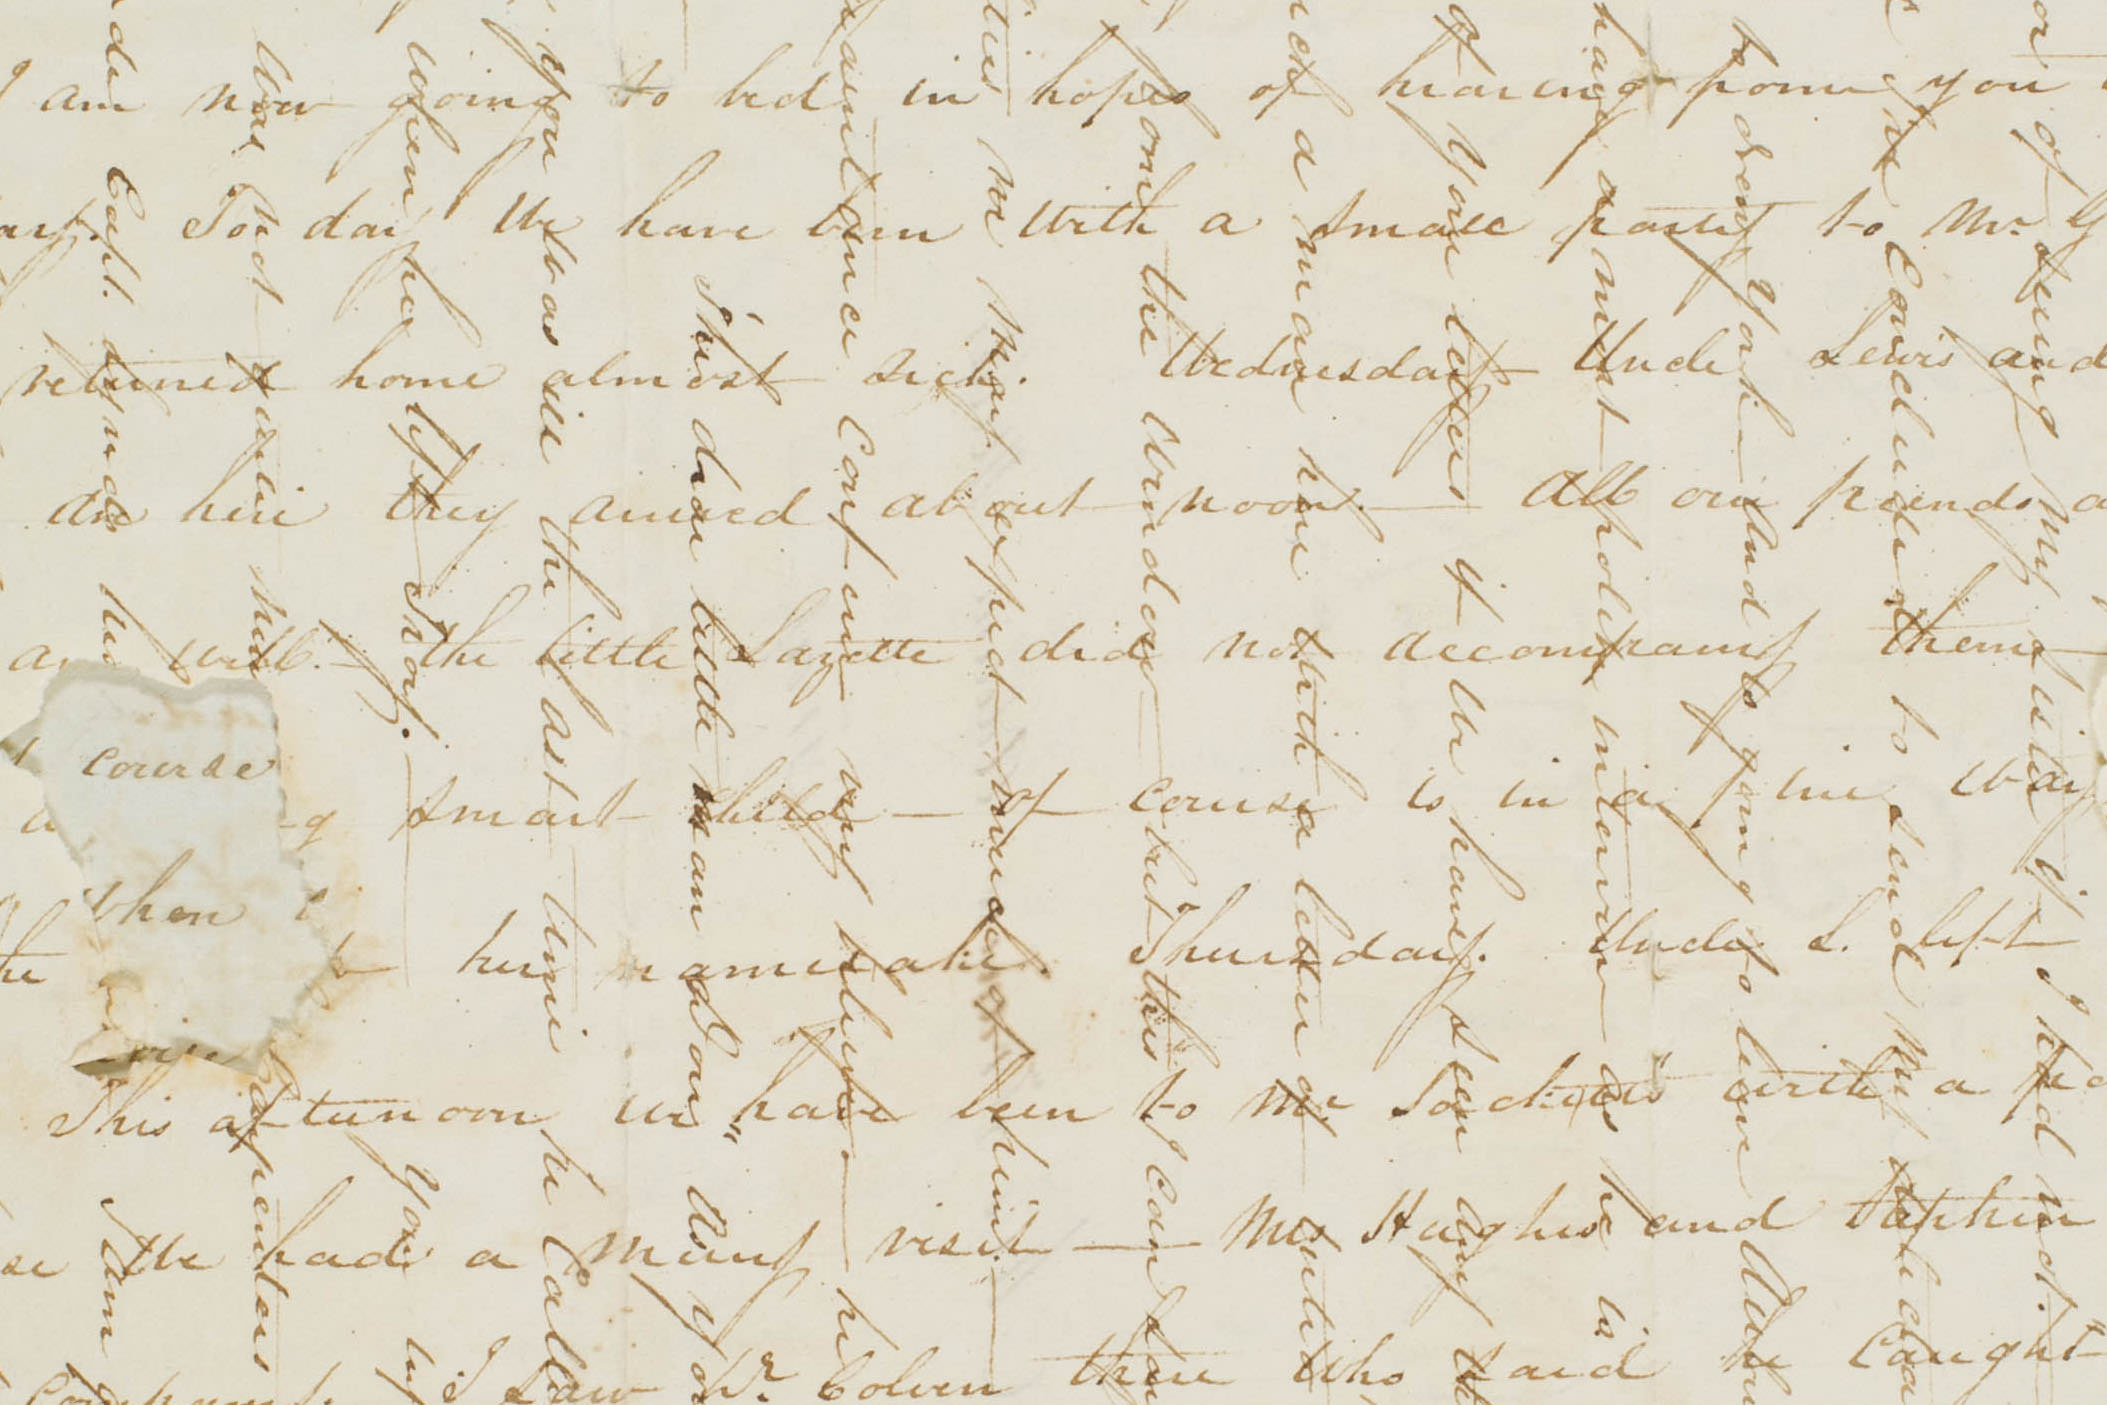 Image of handwritten letter written in 1822